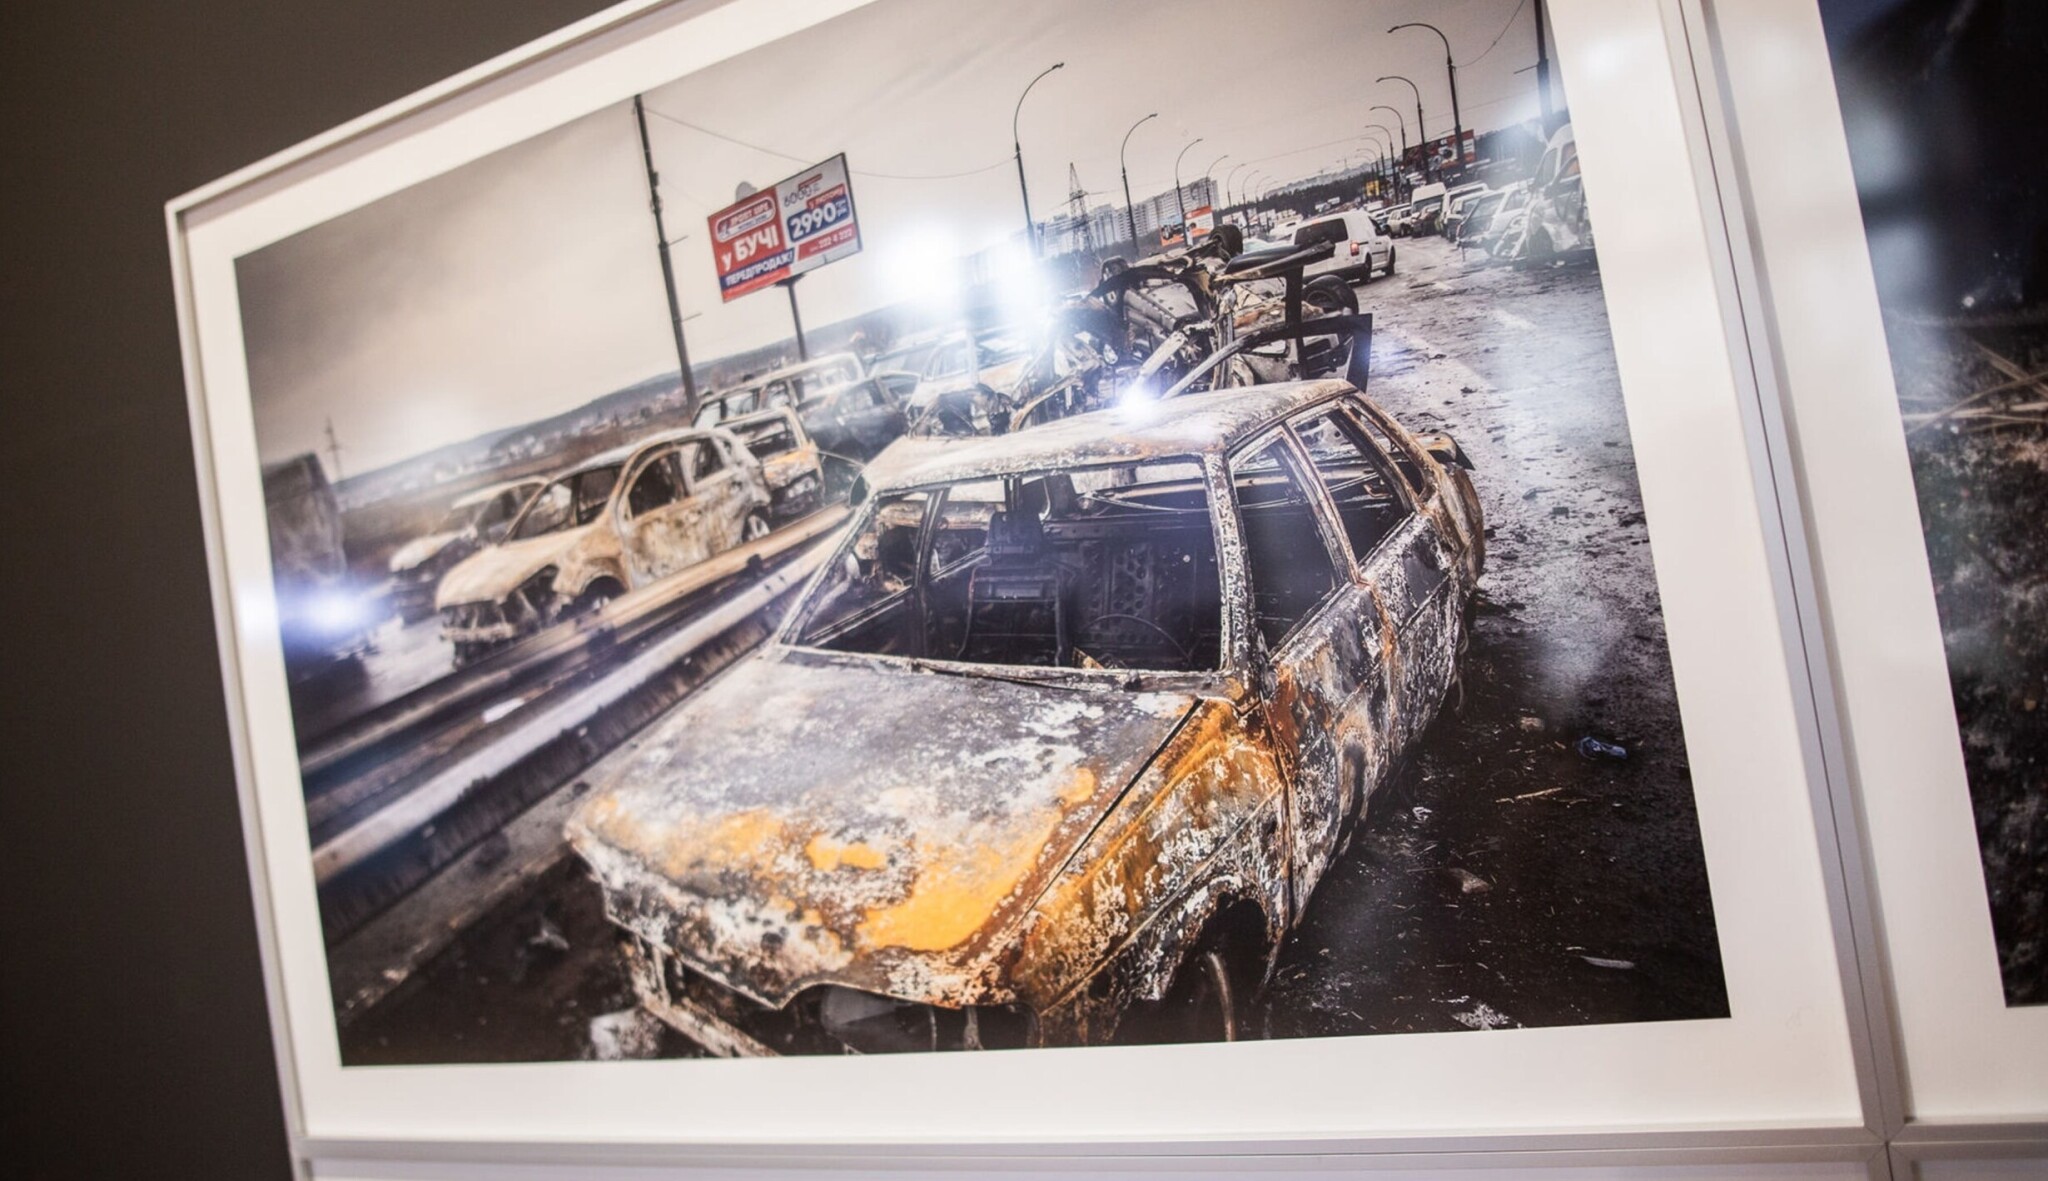 Nejlepší novinářské fotky zachycují hrůzu války, boj s ohněm i smrt královny